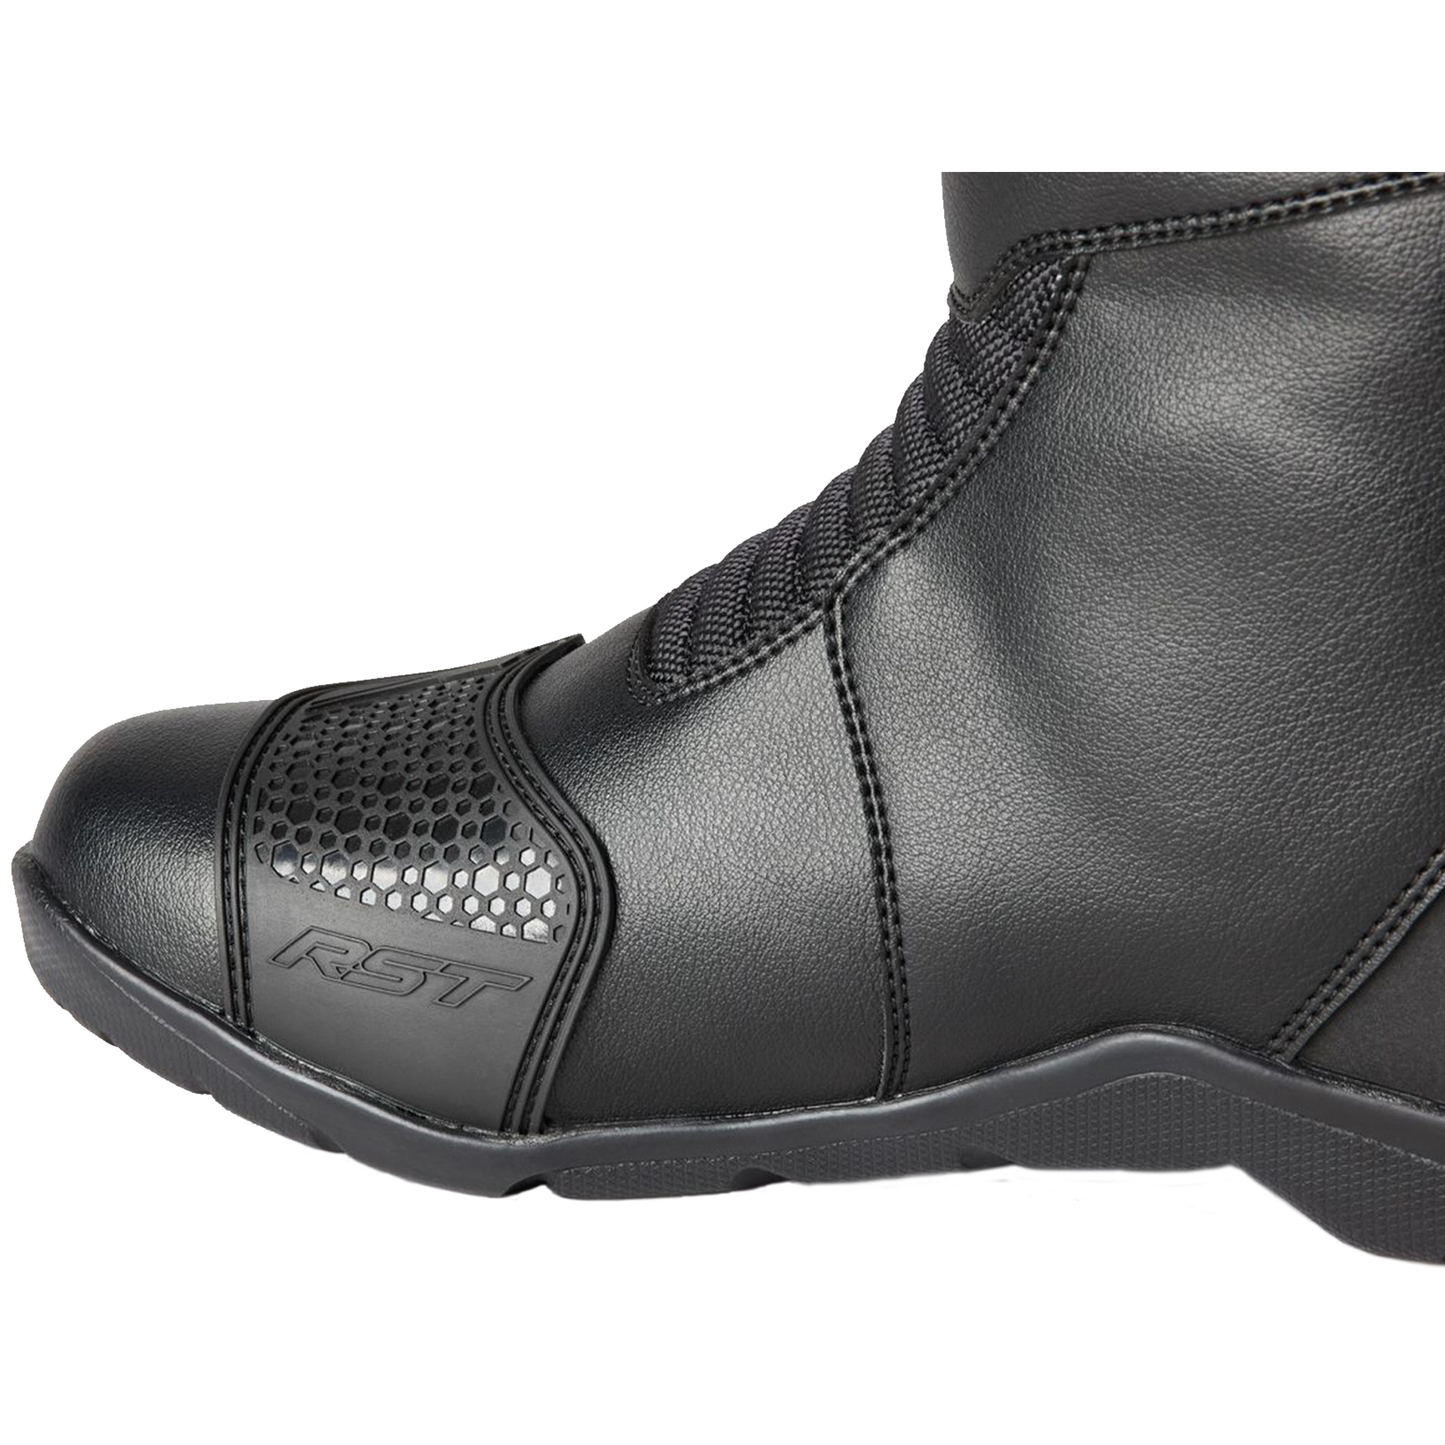 RST Axiom Mid Ladies Waterproof Boots - Black